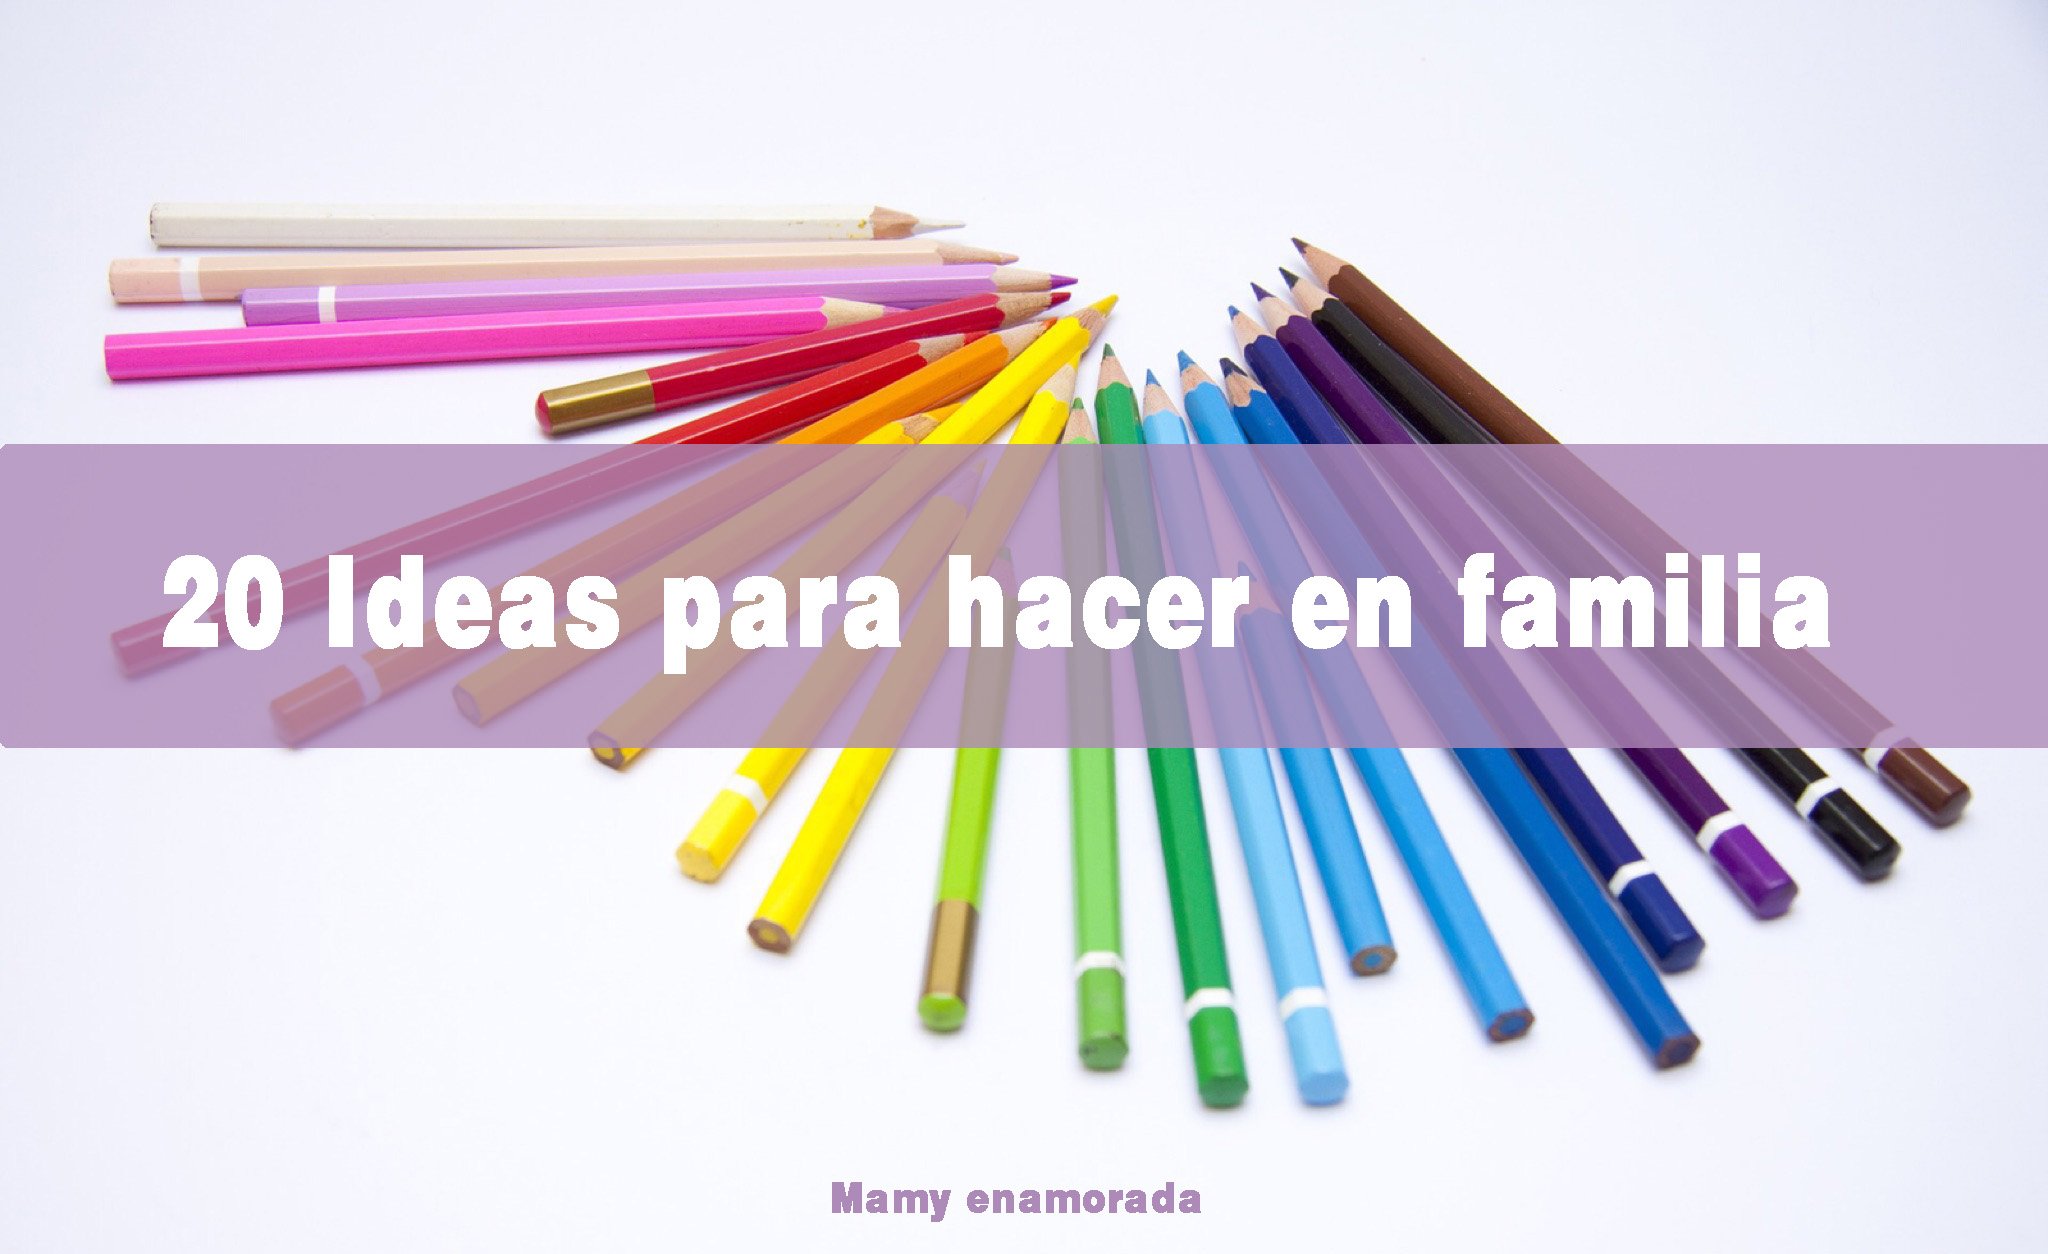 20 ideas para hacer en familia.